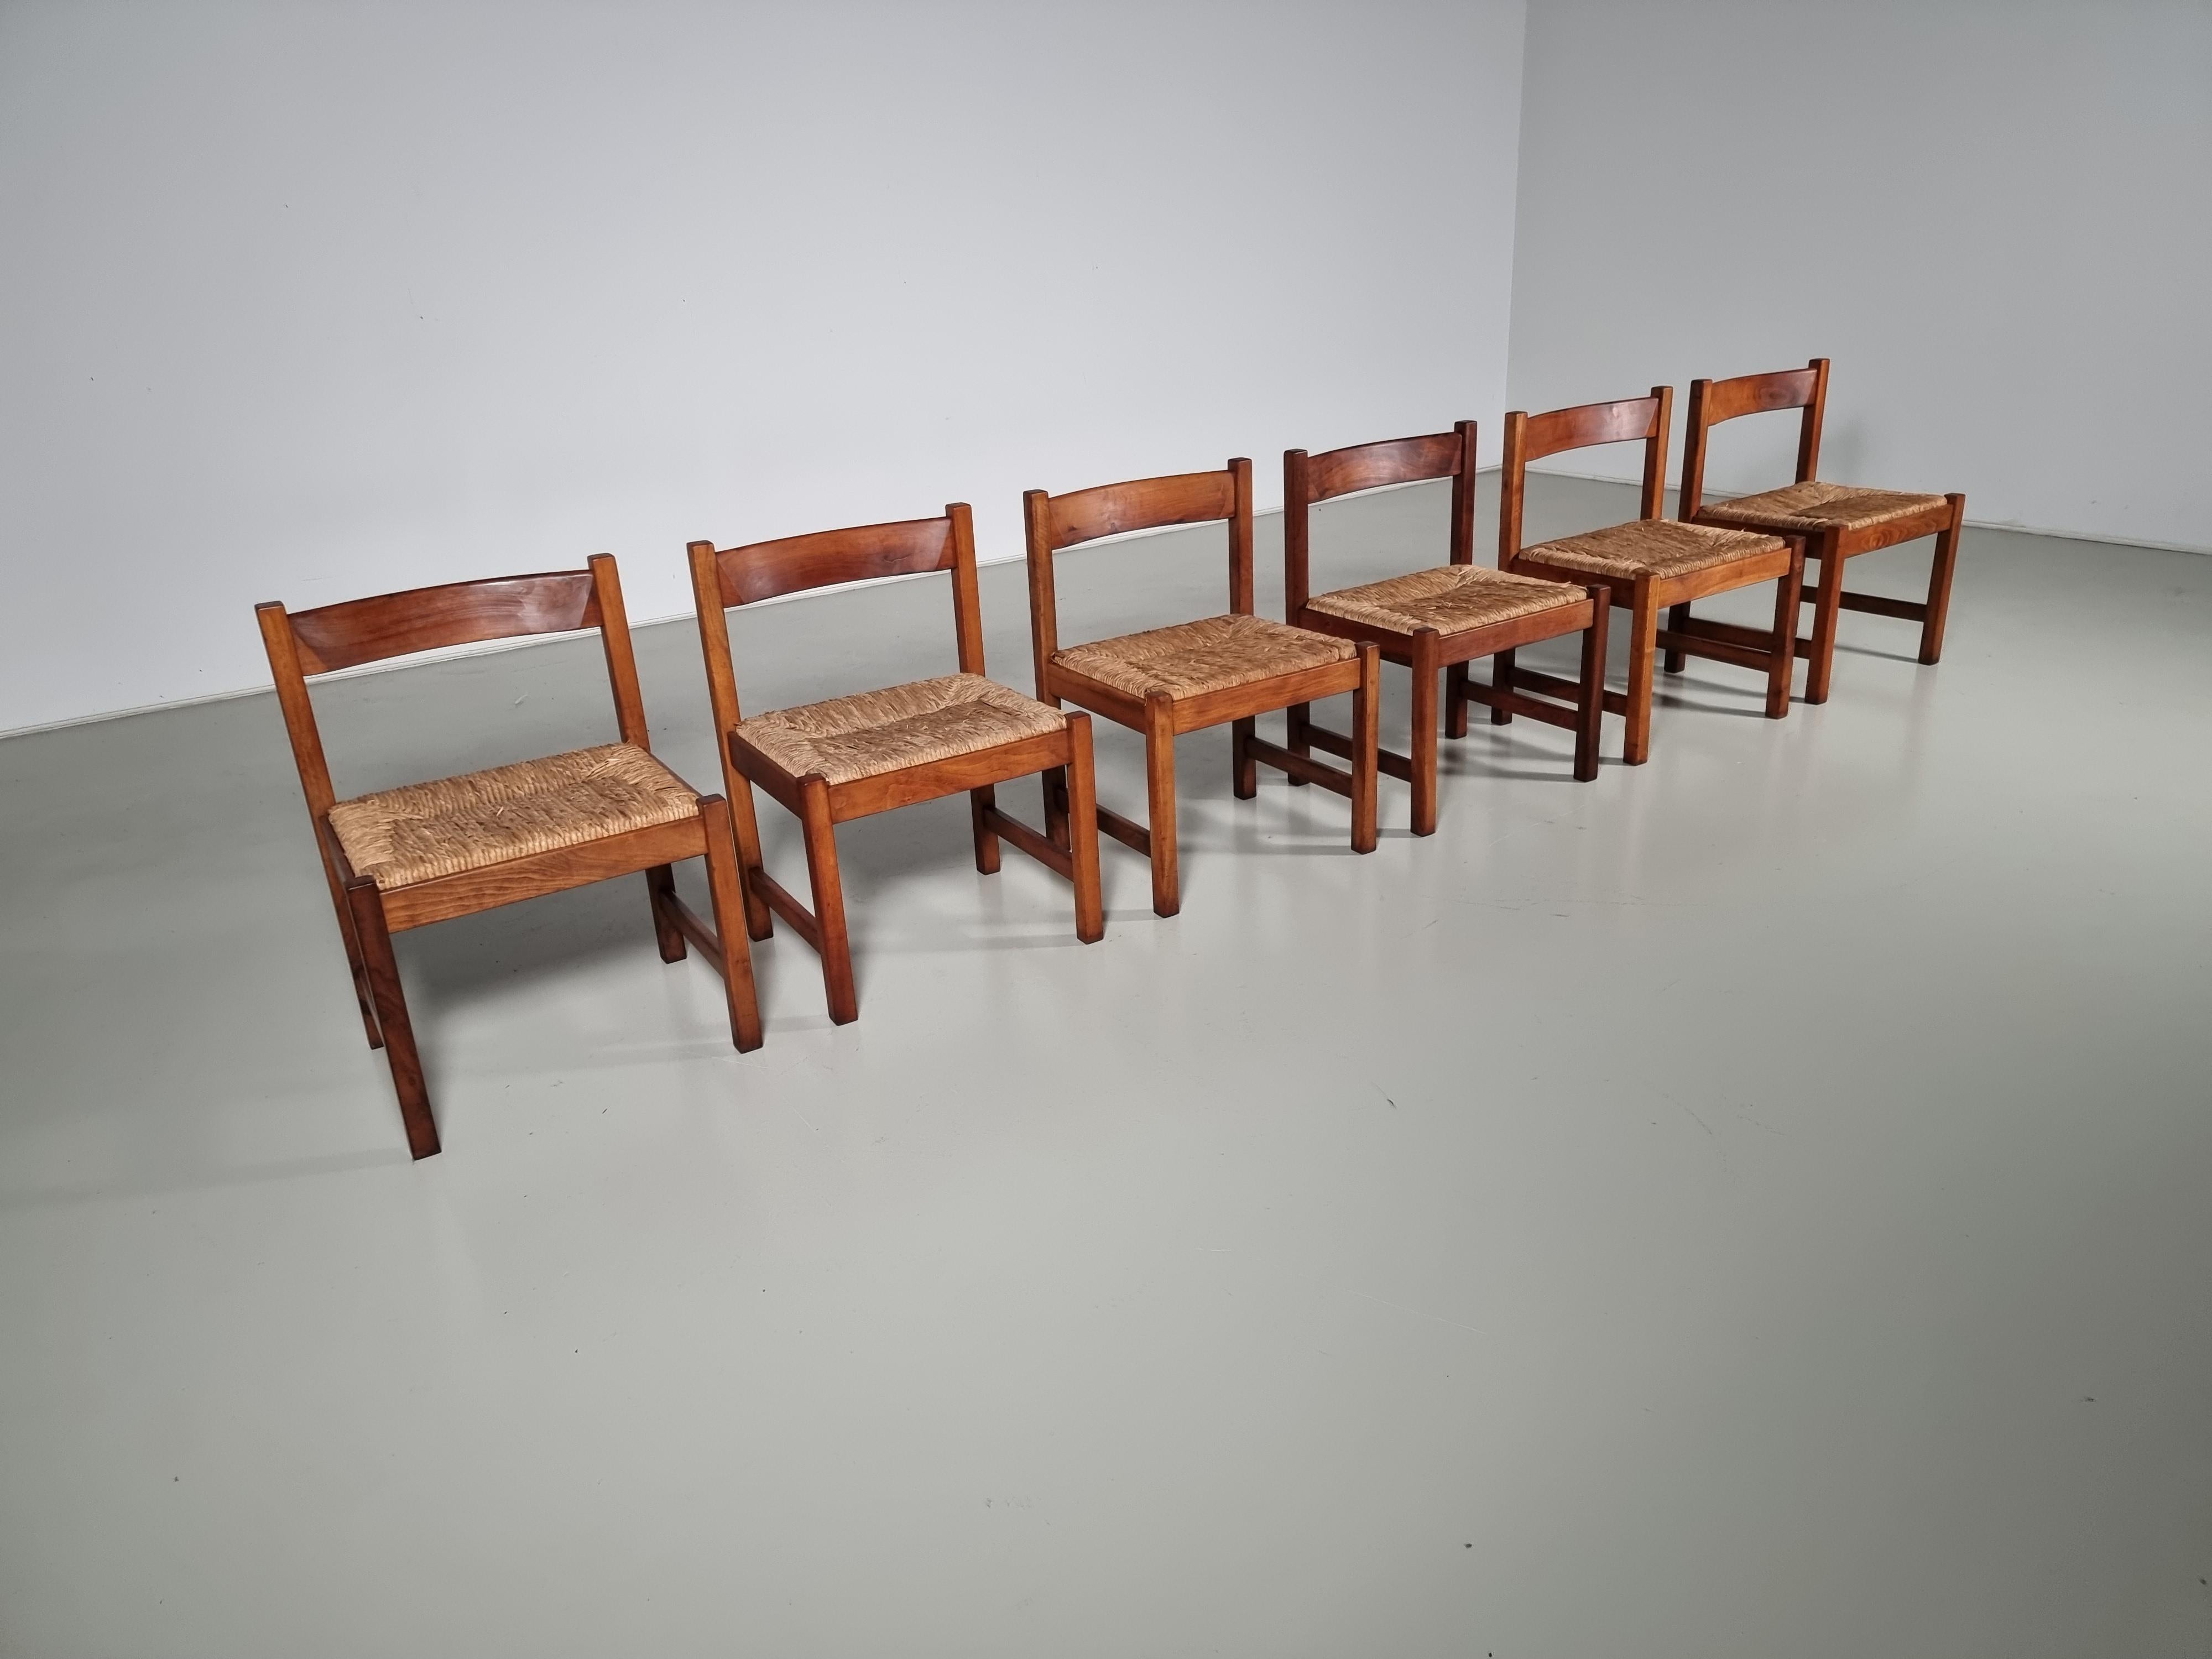 Set di 6 sedie da pranzo della serie Torbecchia, disegnate da Giovanni Michelucci per Poltronova nel 1964.
Struttura in noce massiccio con sedute rivestite in giunco. Le sedie in legno massiccio hanno acquisito una splendida patina nel corso degli